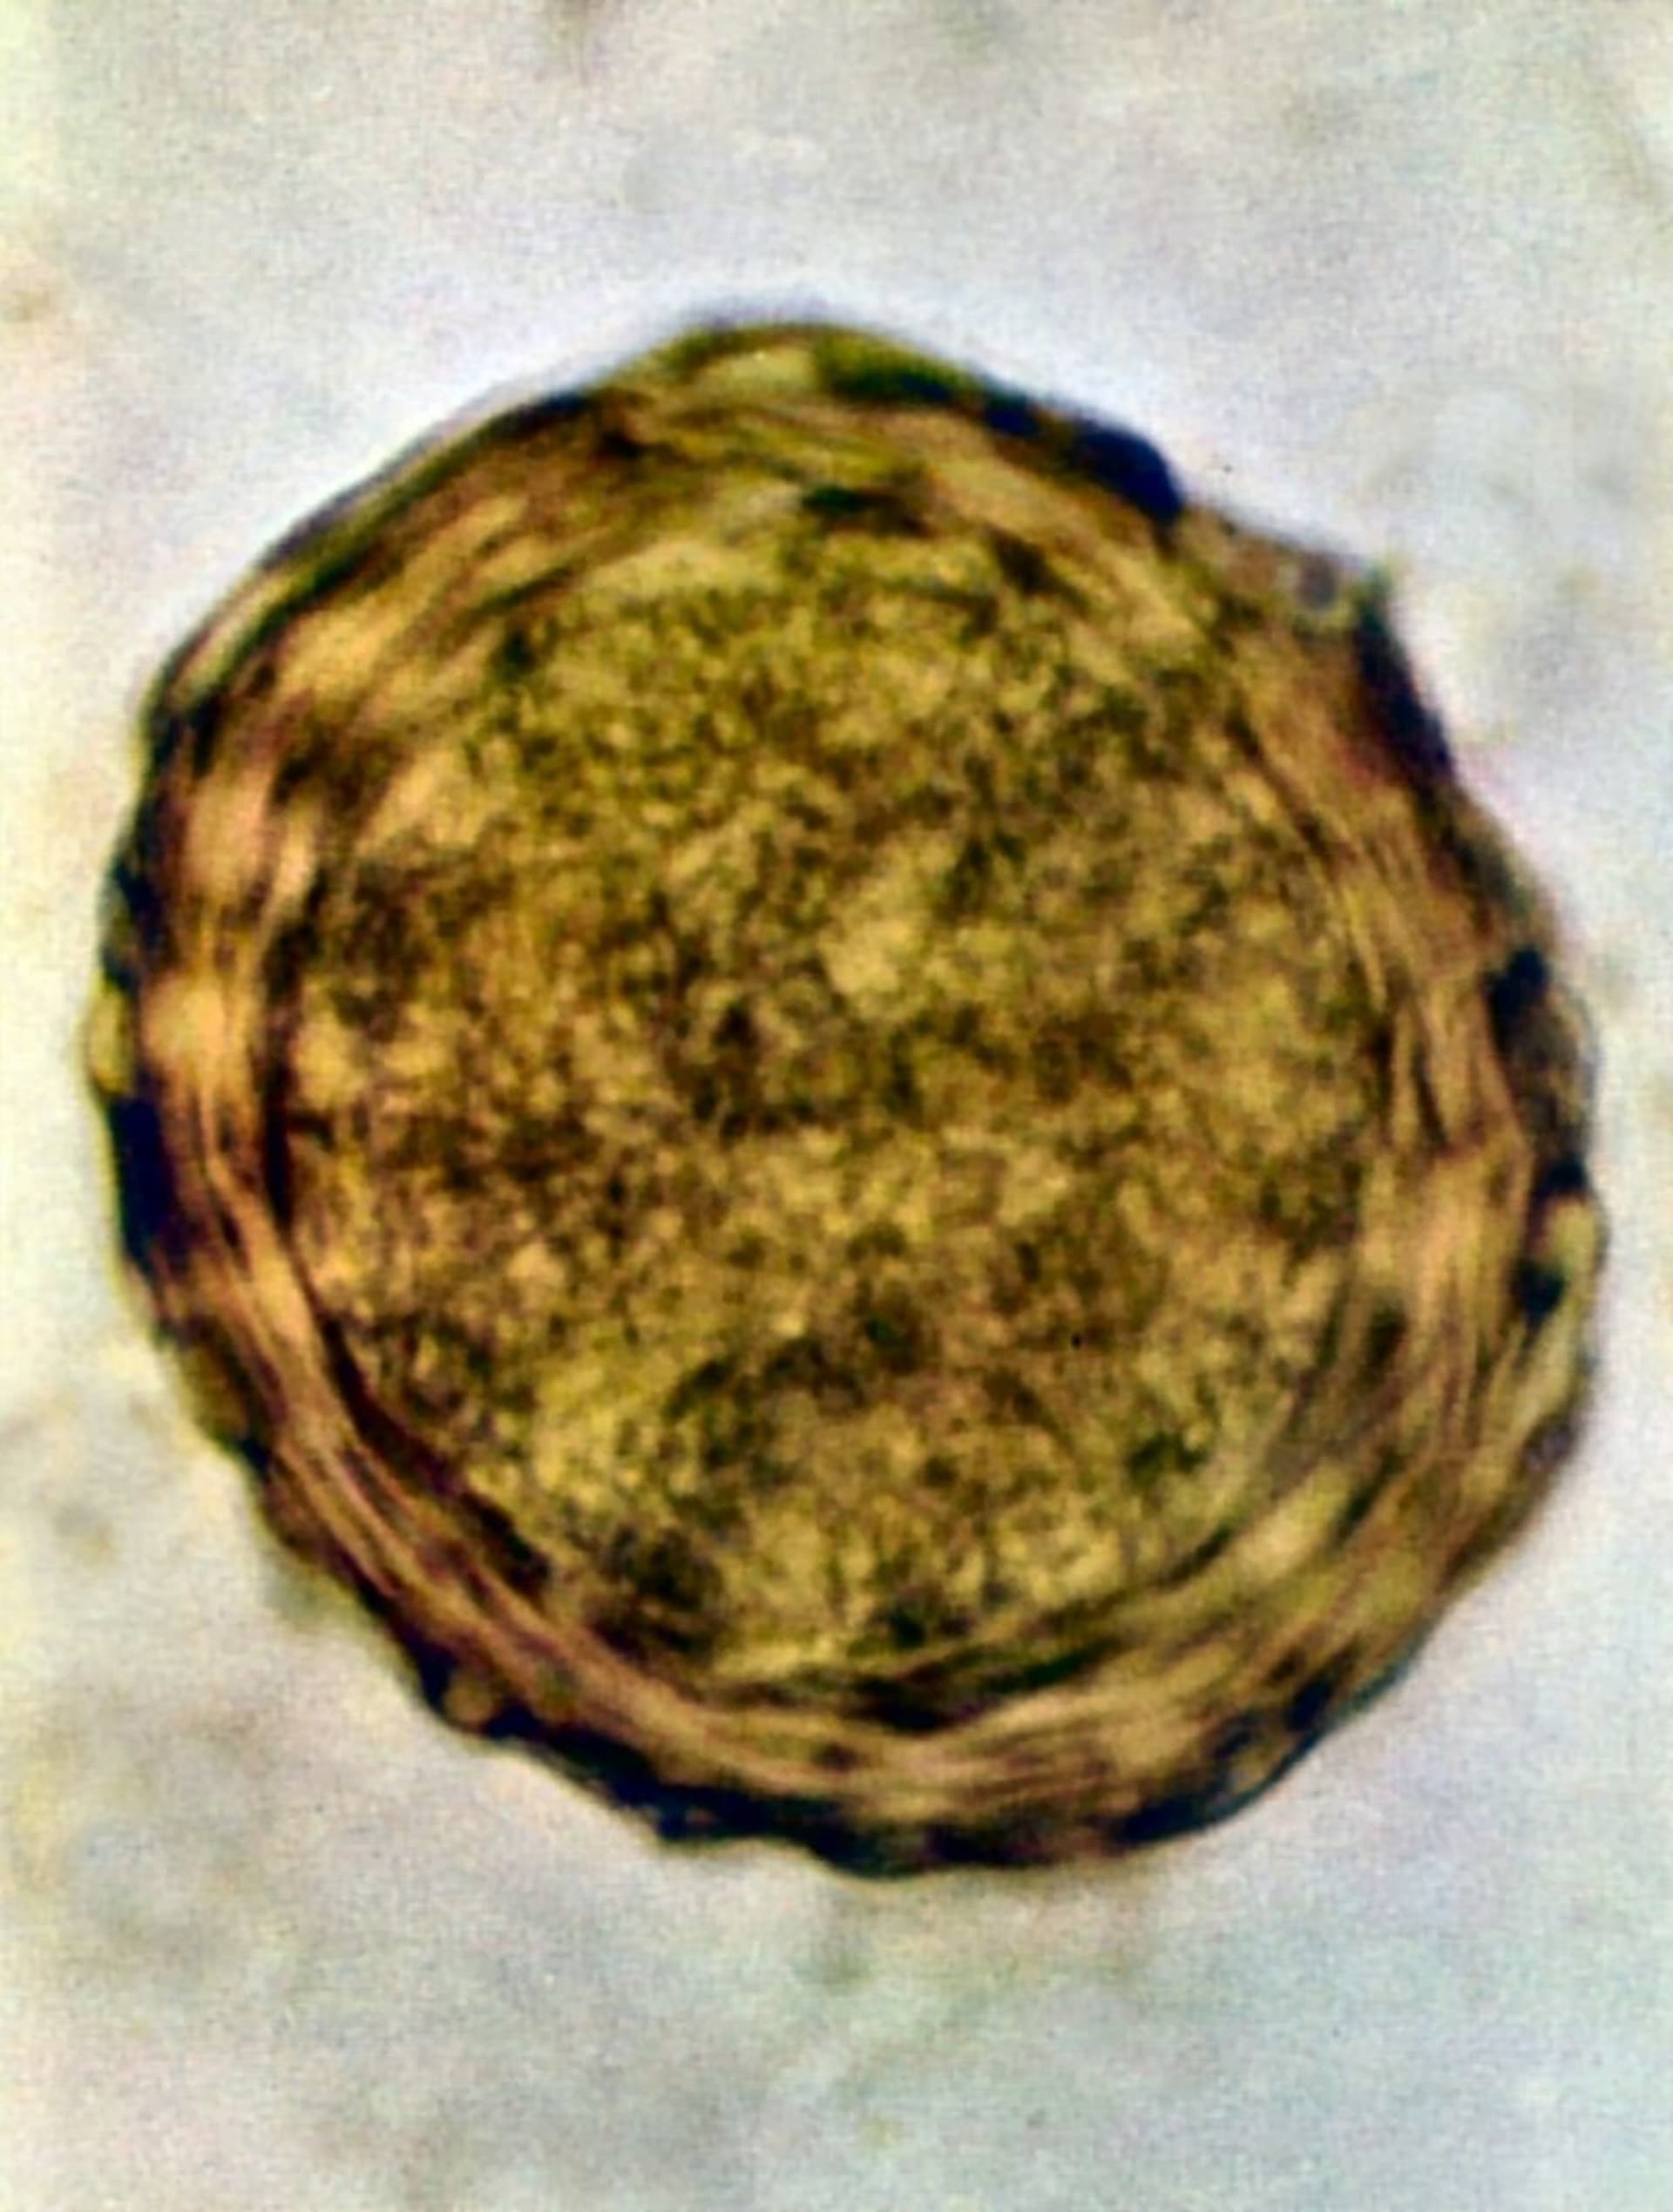 Škrkavka dětská (vajíčko) vytažená z lidského výkalu